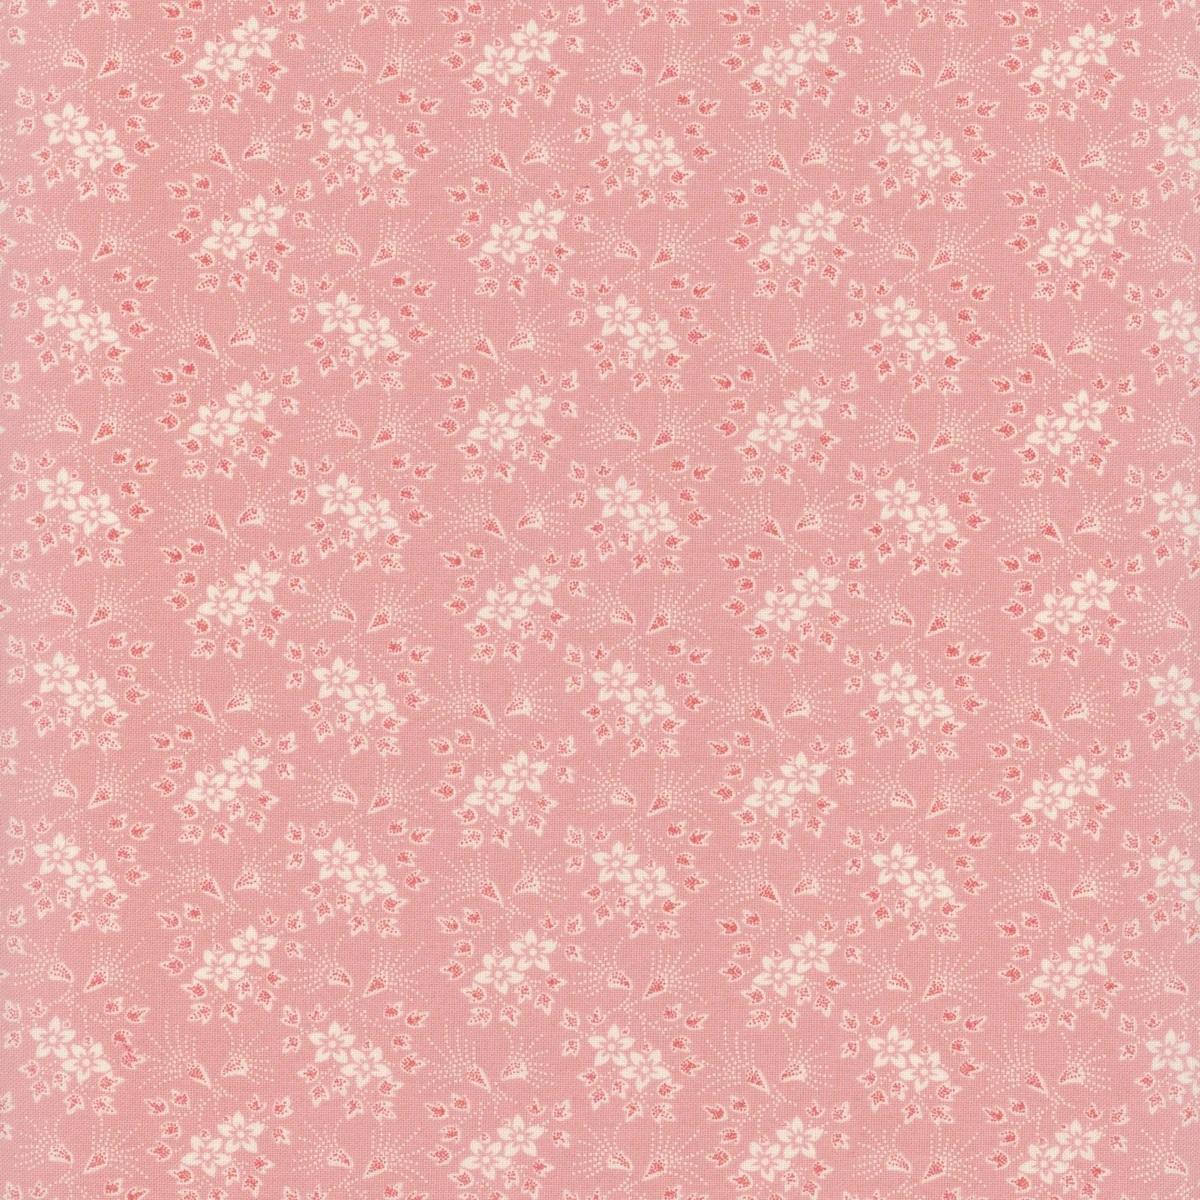 Medium Floral Sprays - Pink